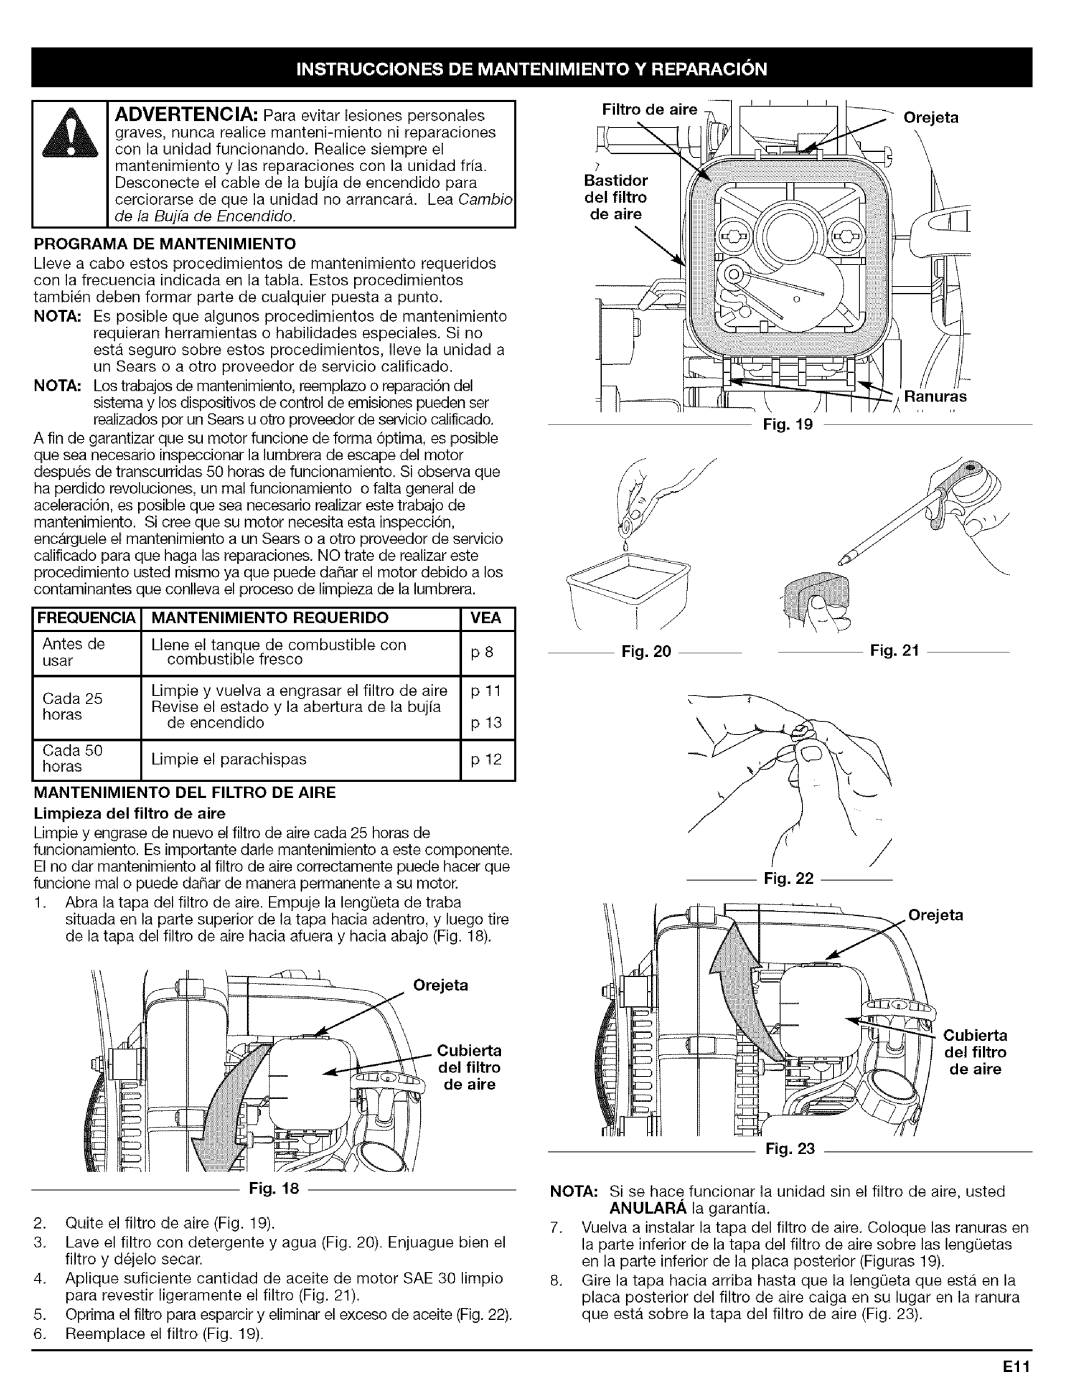 Craftsman 316.79479 manual de la Buja de Encendido 